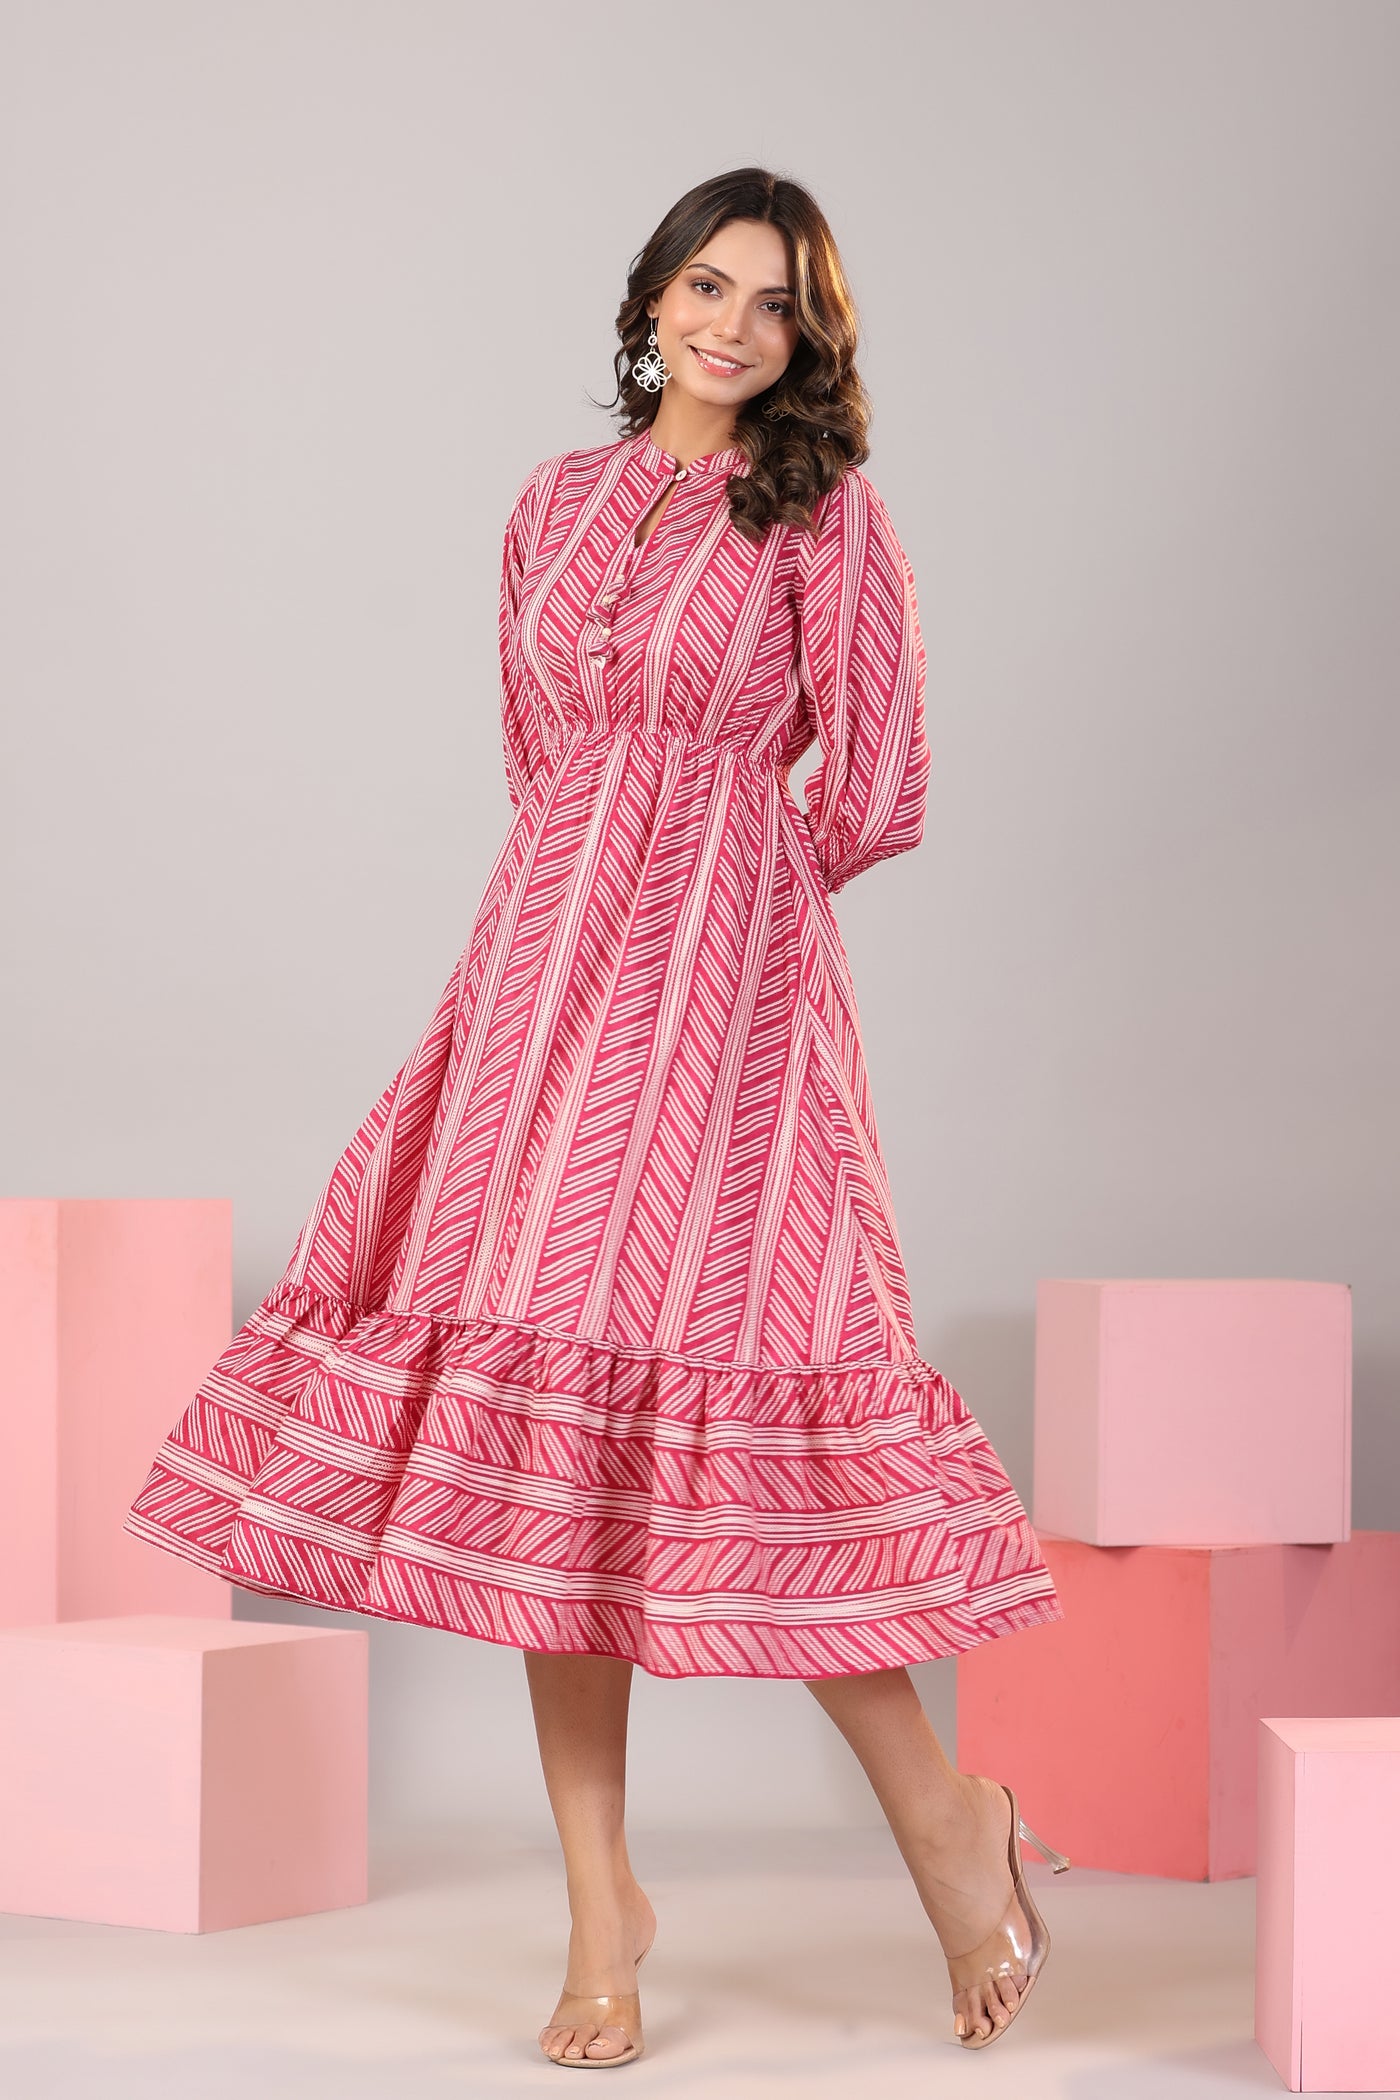 Patterned Shibori on Hot Pink MIDI Cotton Dress